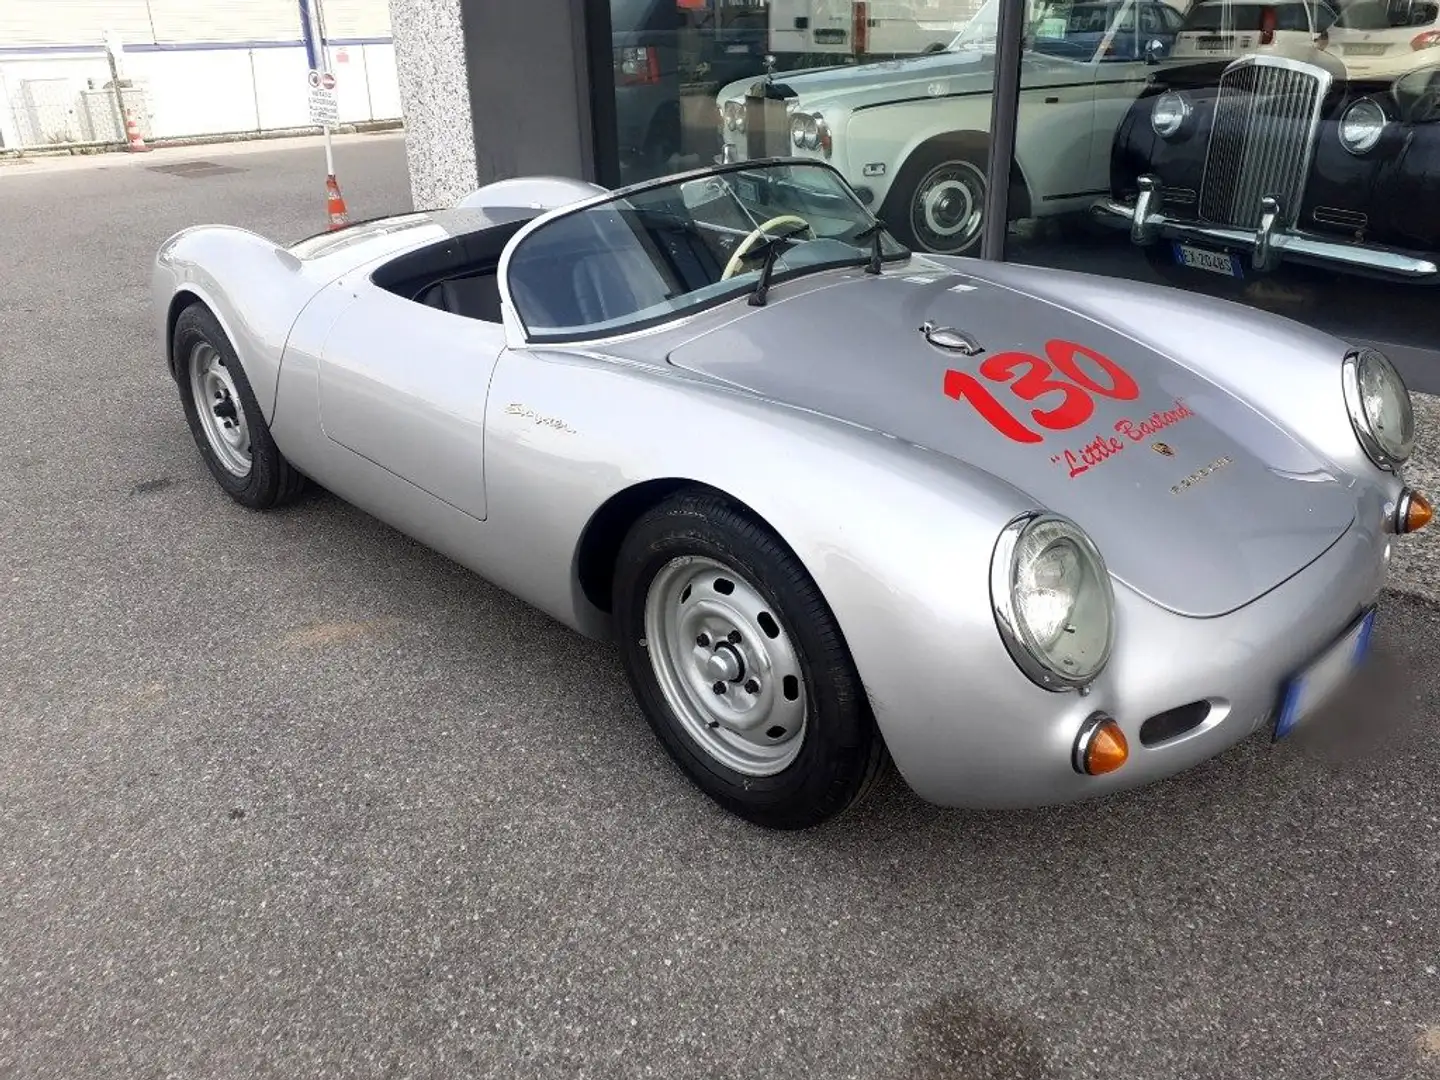 usato Porsche 356 City car a Codroipo UD per € 58.000,-